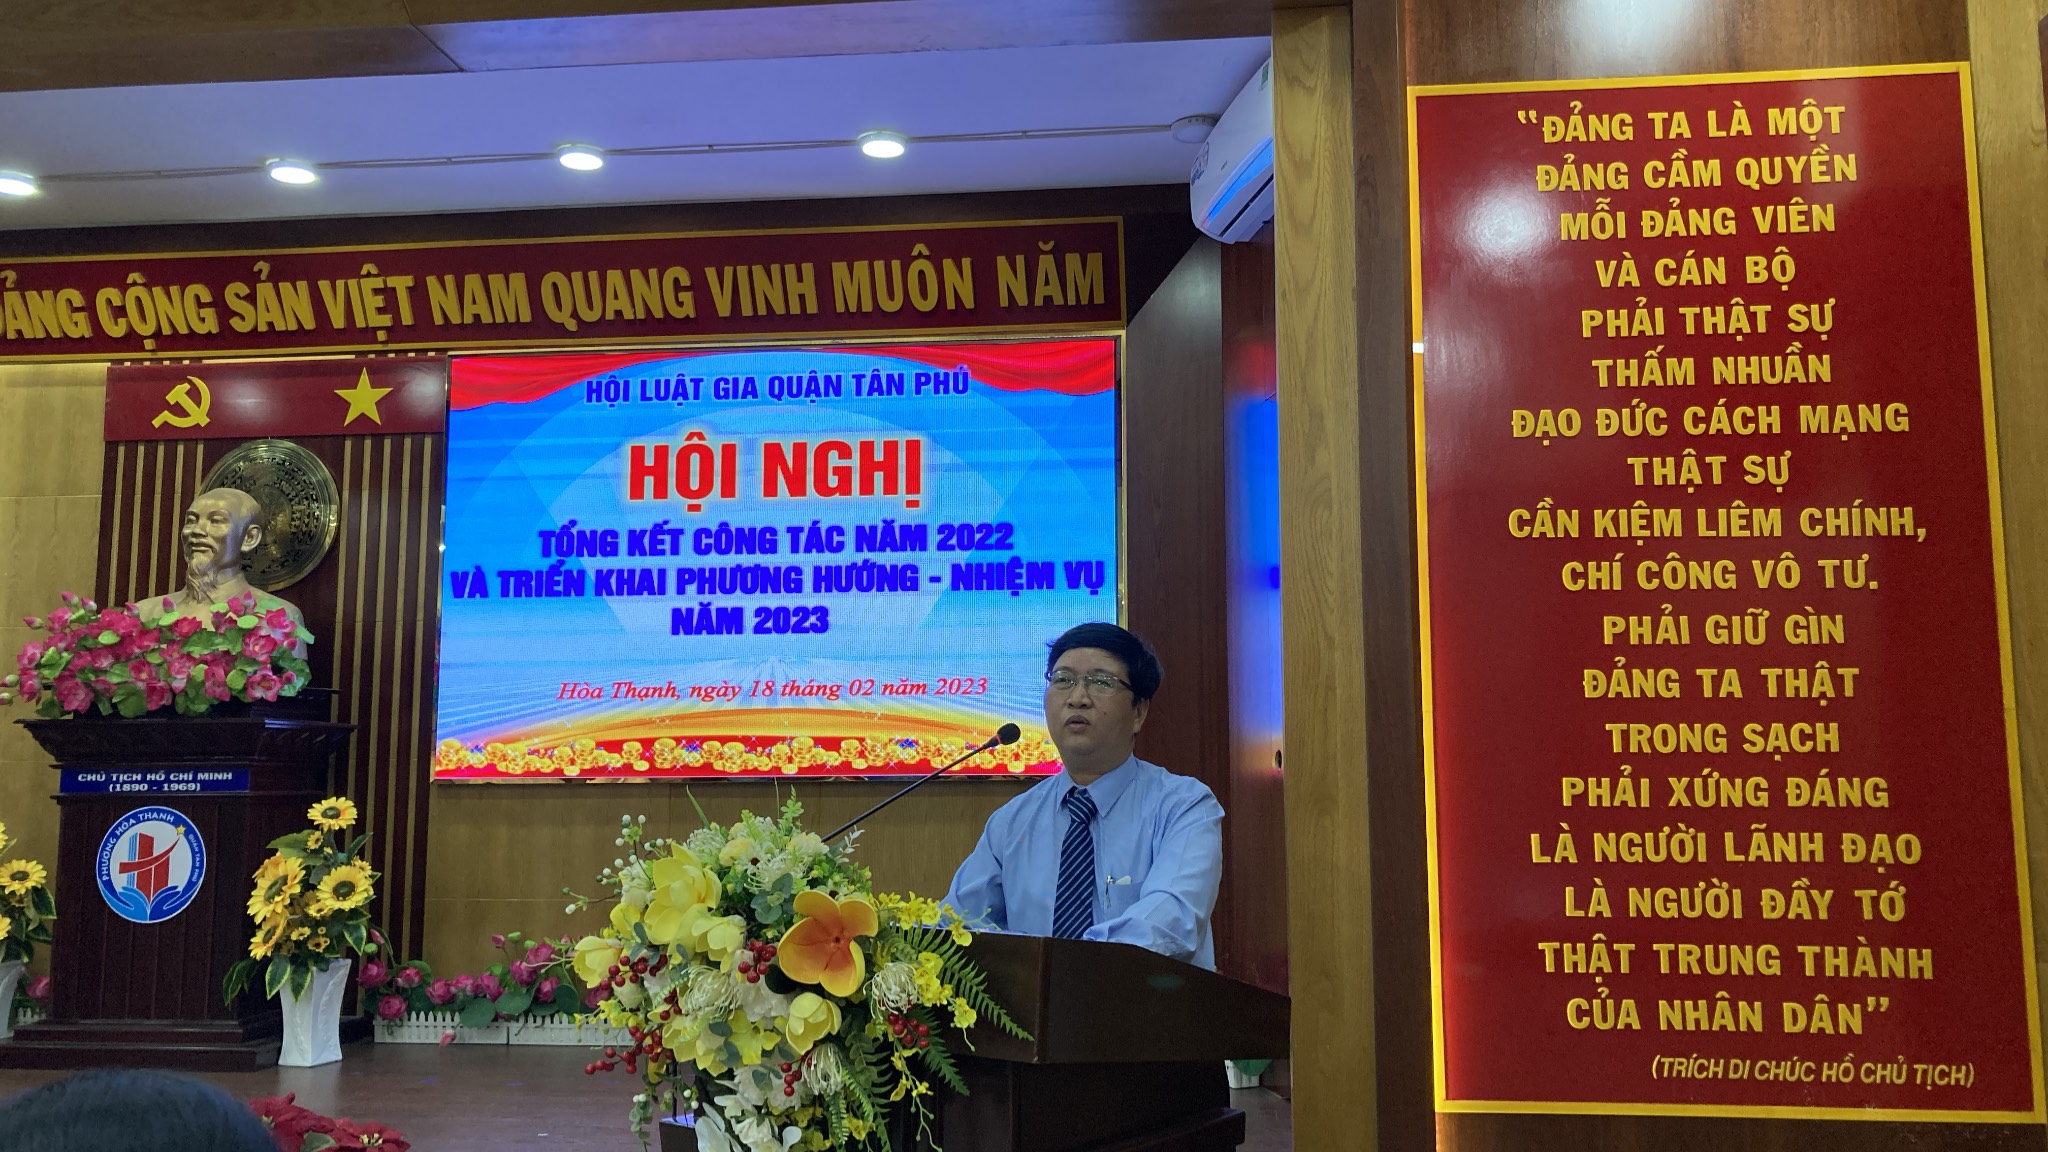 Luật sư Vũ Quốc Toản hội viên Hội Luật gia quận Tân Phú đóng góp ý kiến.